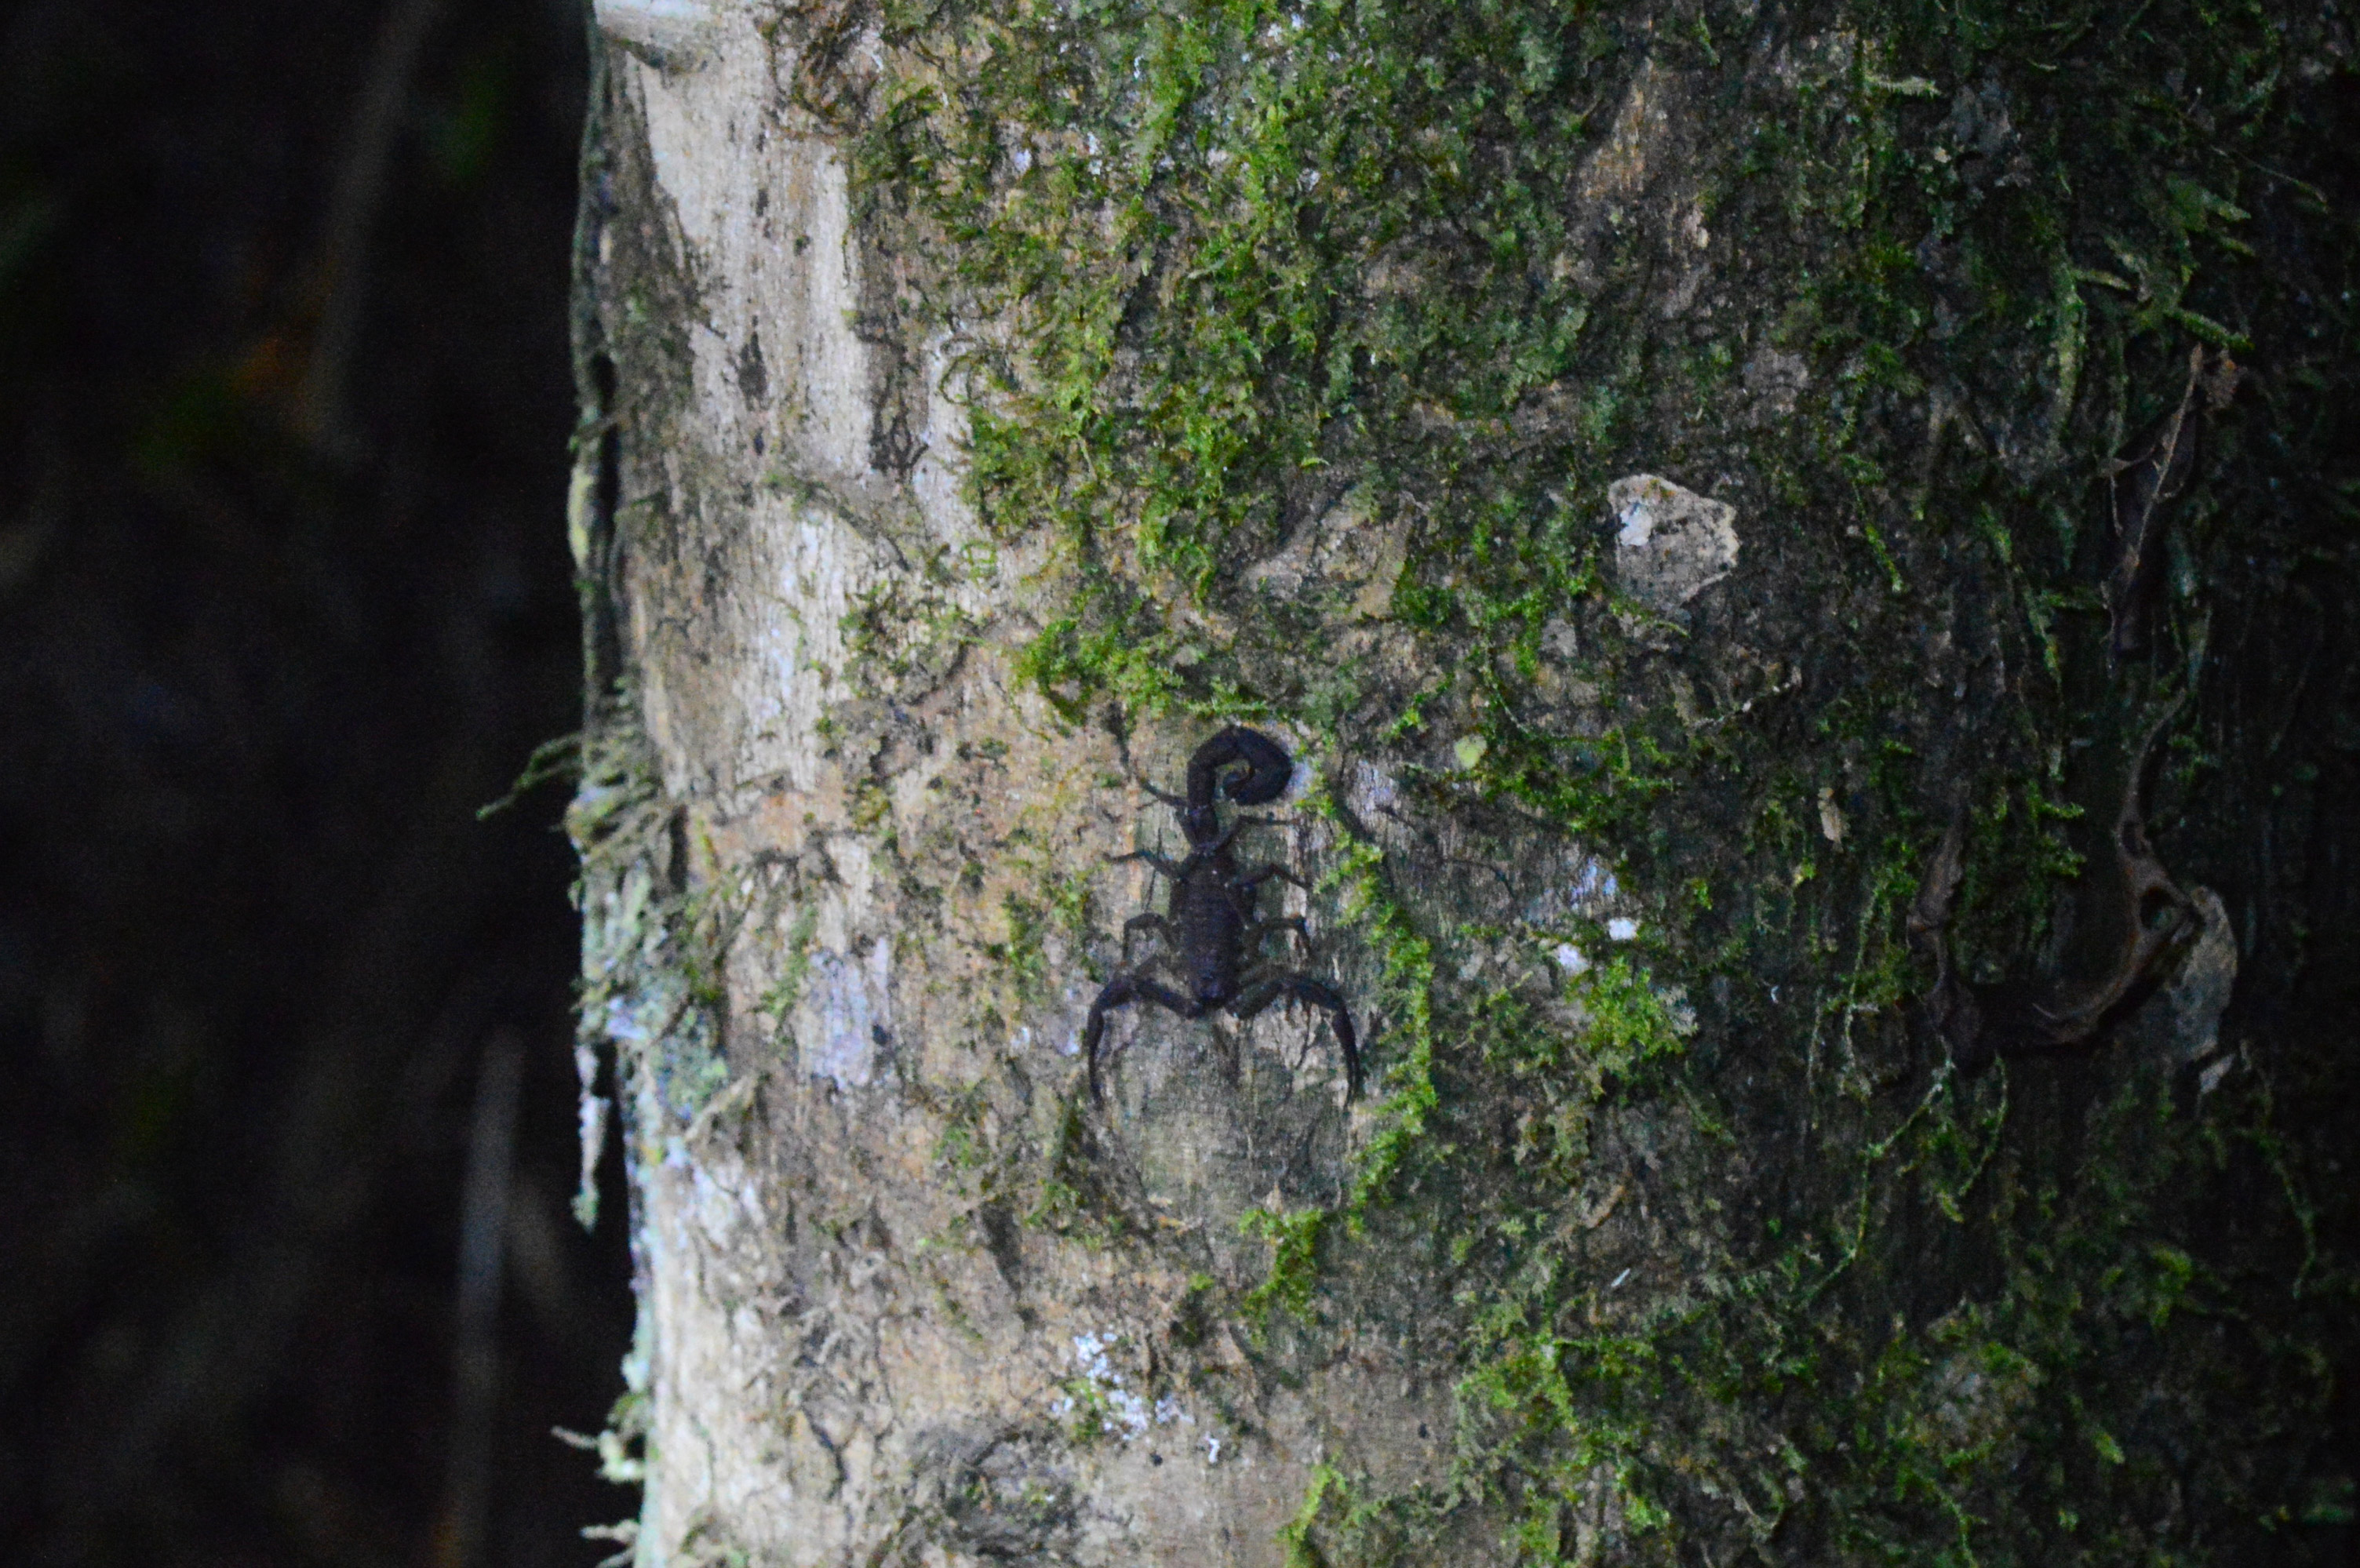 Scorpion noir à la queue enroulée, posé sur un tronc d'arbre à moitié recouvert de mousse